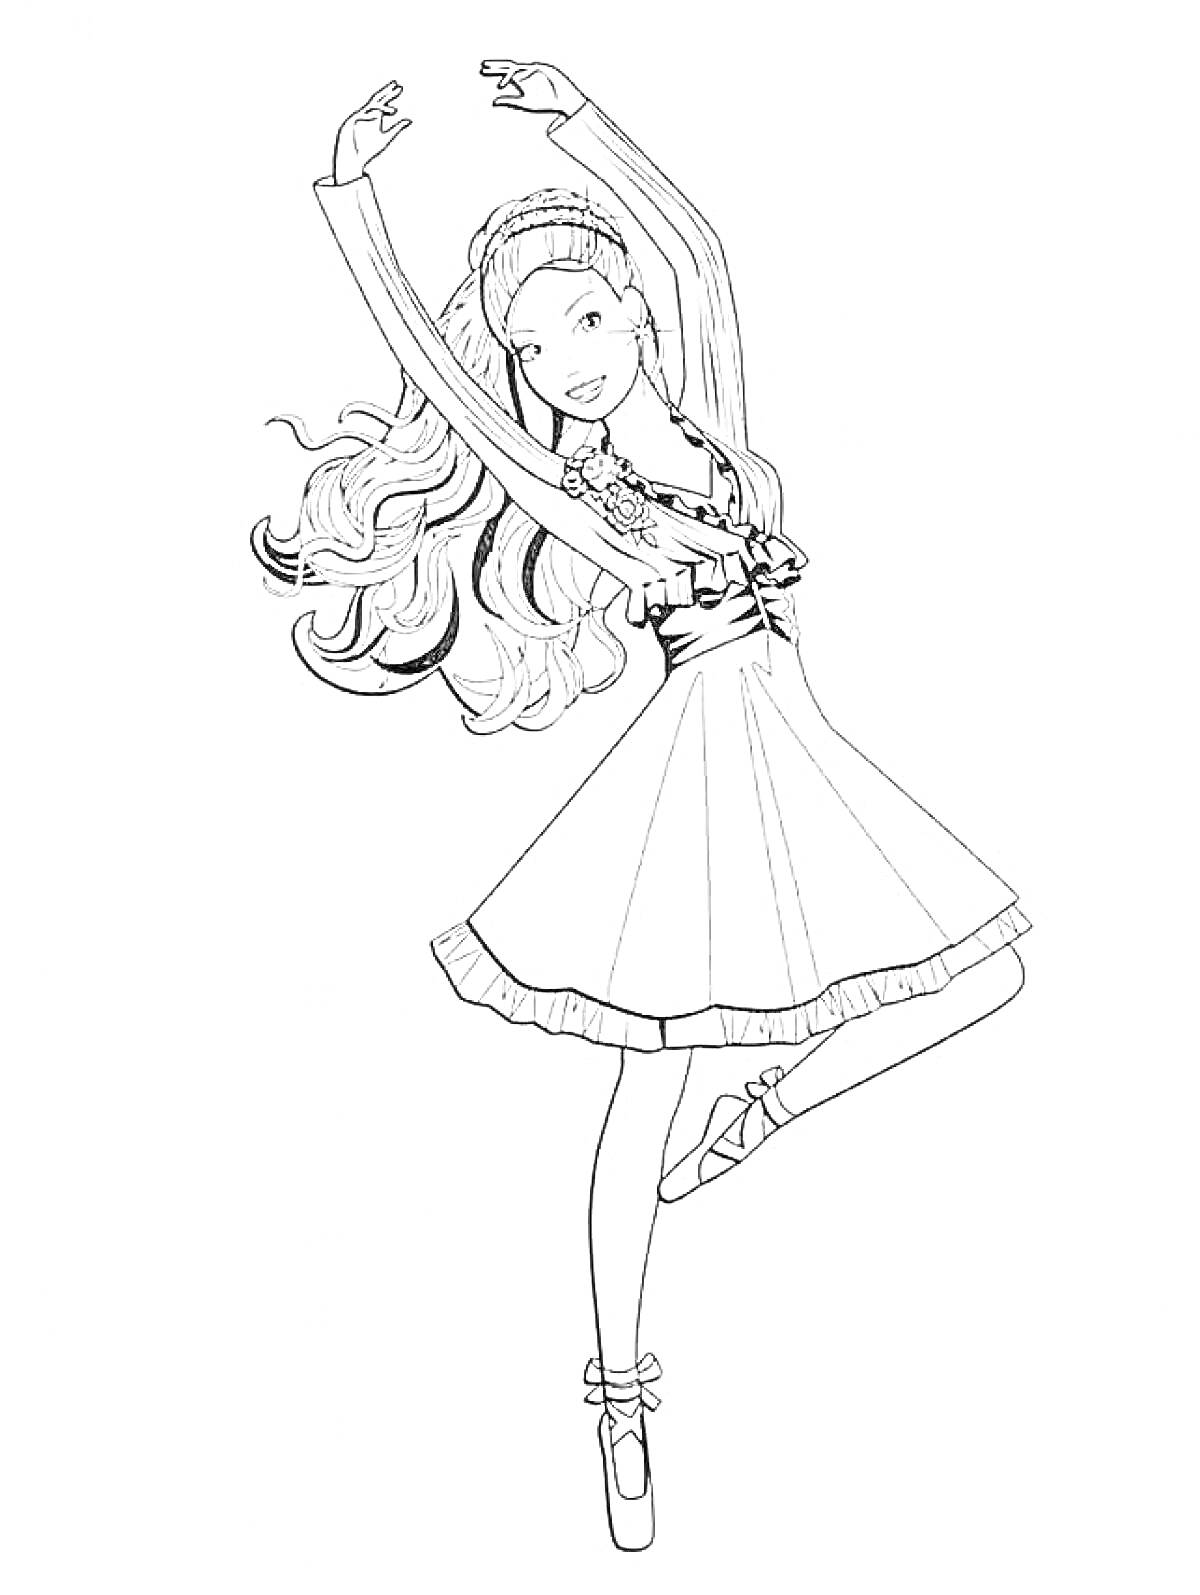 Балерина с длинными волосами, в балетной пачке, стоящая на пуантах и поднявшая руки вверх